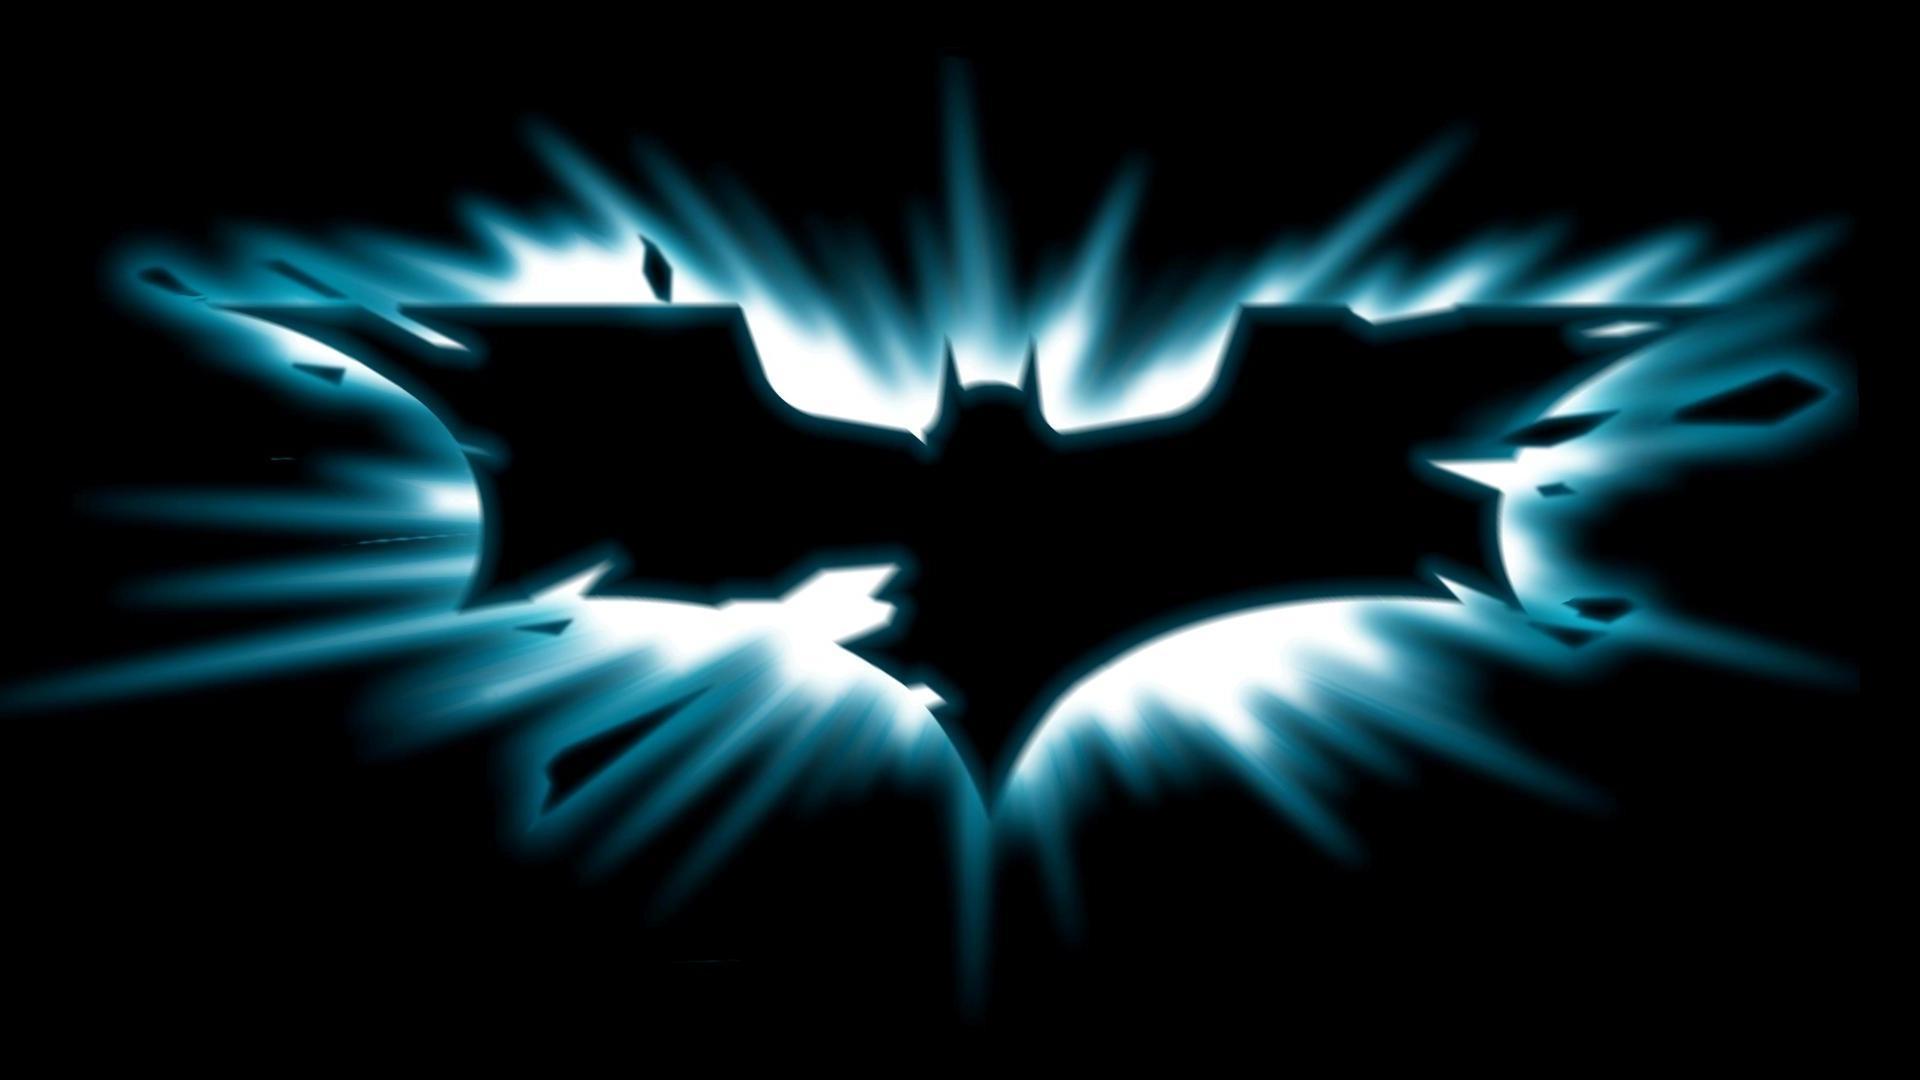 50 Batman Logo Wallpapers For Free Download Hd 1080p HD Wallpapers Download Free Images Wallpaper [wallpaper981.blogspot.com]